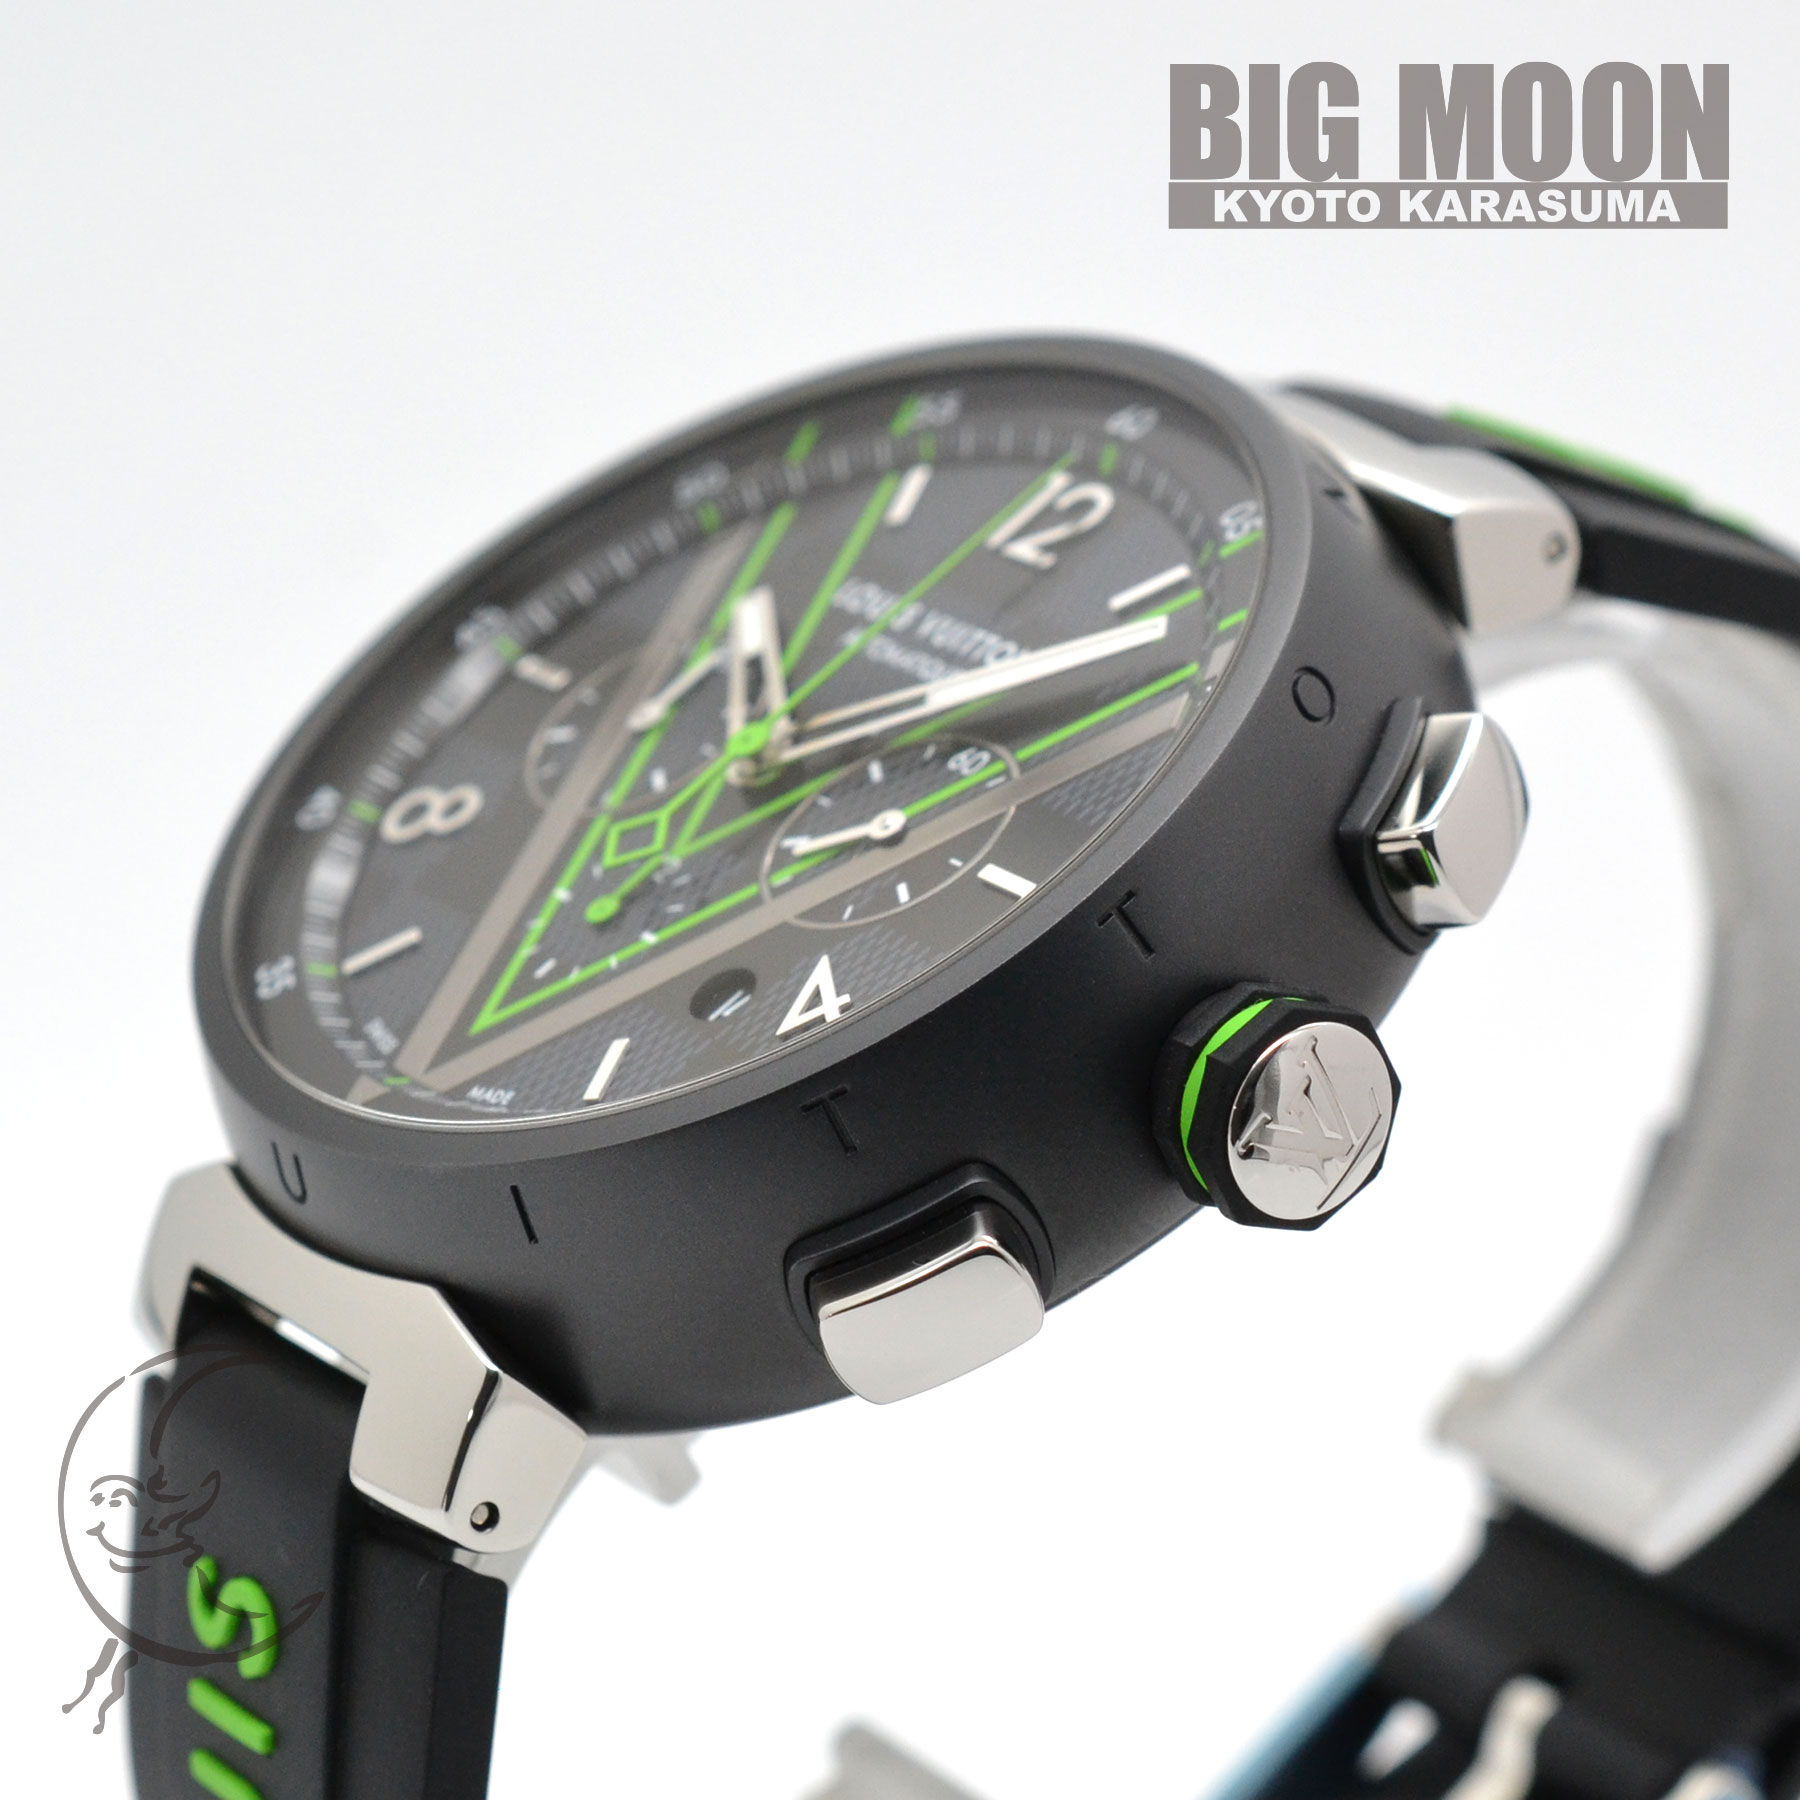 タンブール オトマティック クロノグラフ ダミエ グラフィット レース Ref.QA130Z 品 メンズ 腕時計